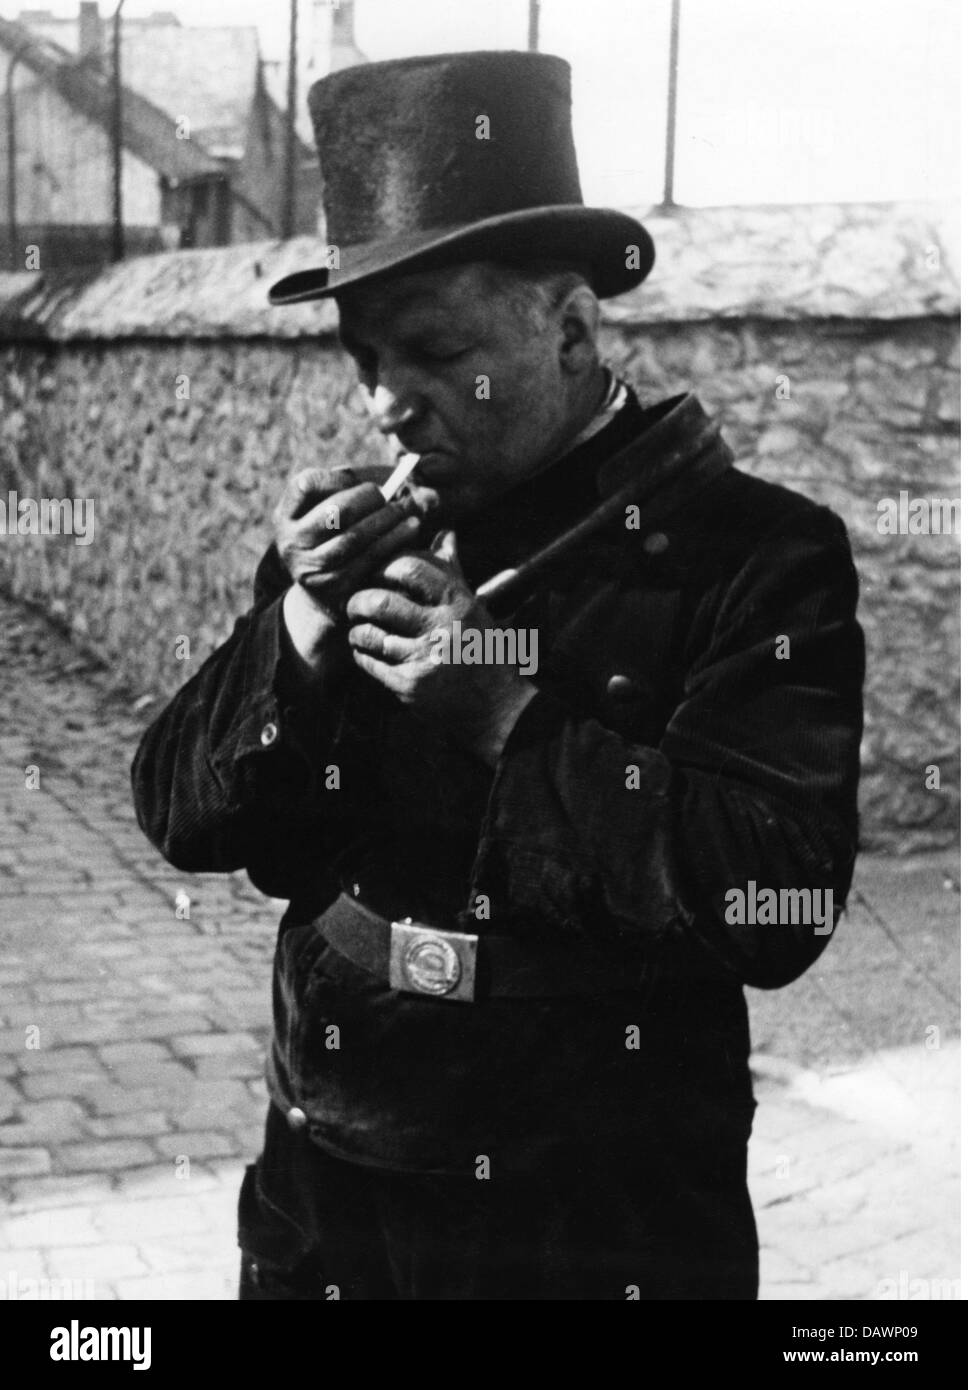 Personnes, professions, cheminée de balayage, l'éclairage d'une cigarette, Allemagne de l'Ouest, années 1960, , droits additionnels-Clearences-non disponible Banque D'Images